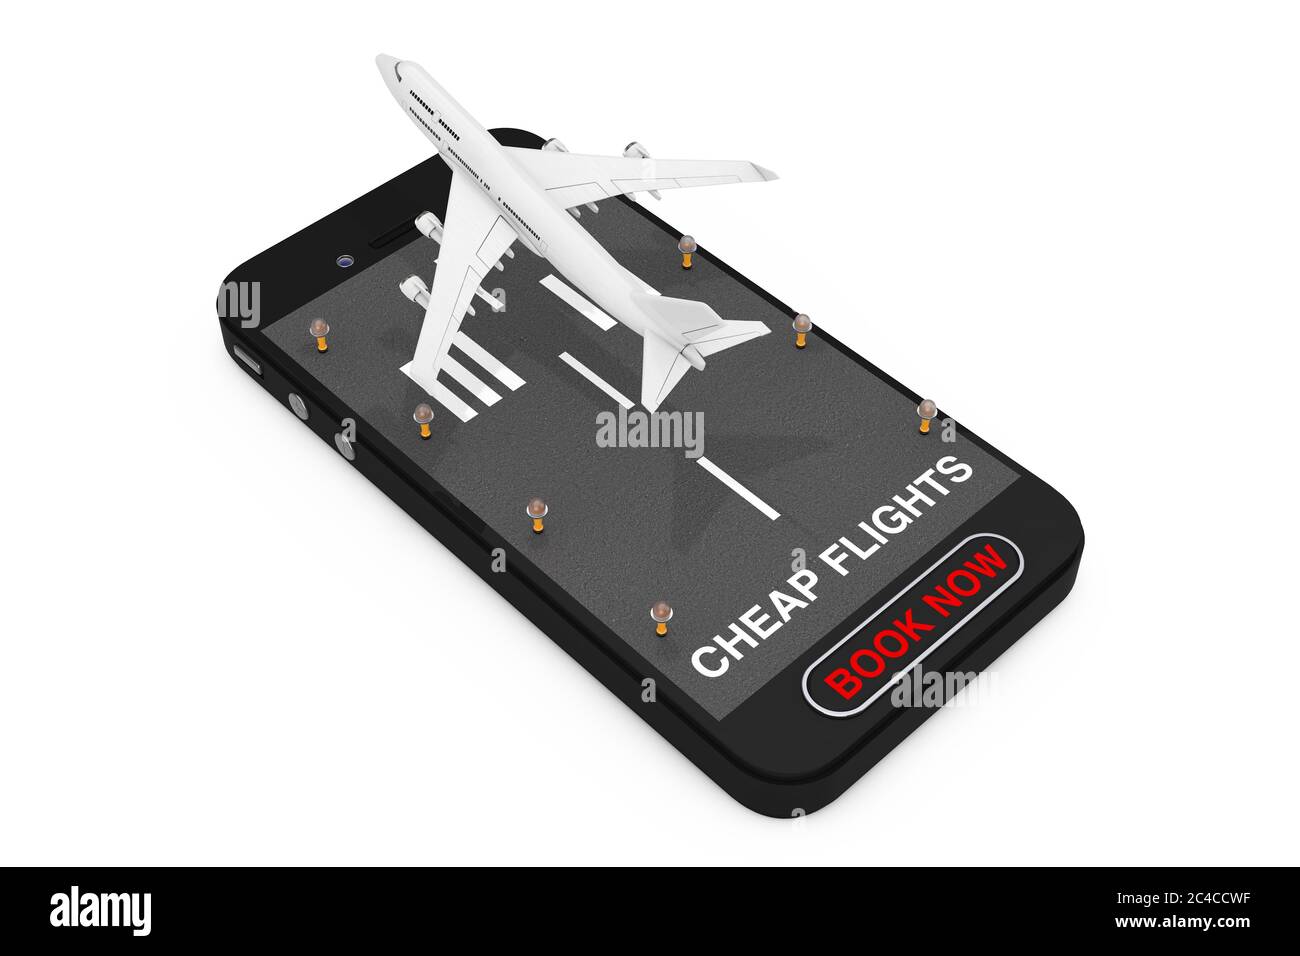 White Jet passager avion décollage de téléphone mobile avec piste, vols bon marché signer et réserver maintenant bouton sur fond blanc. Rendu 3d Banque D'Images